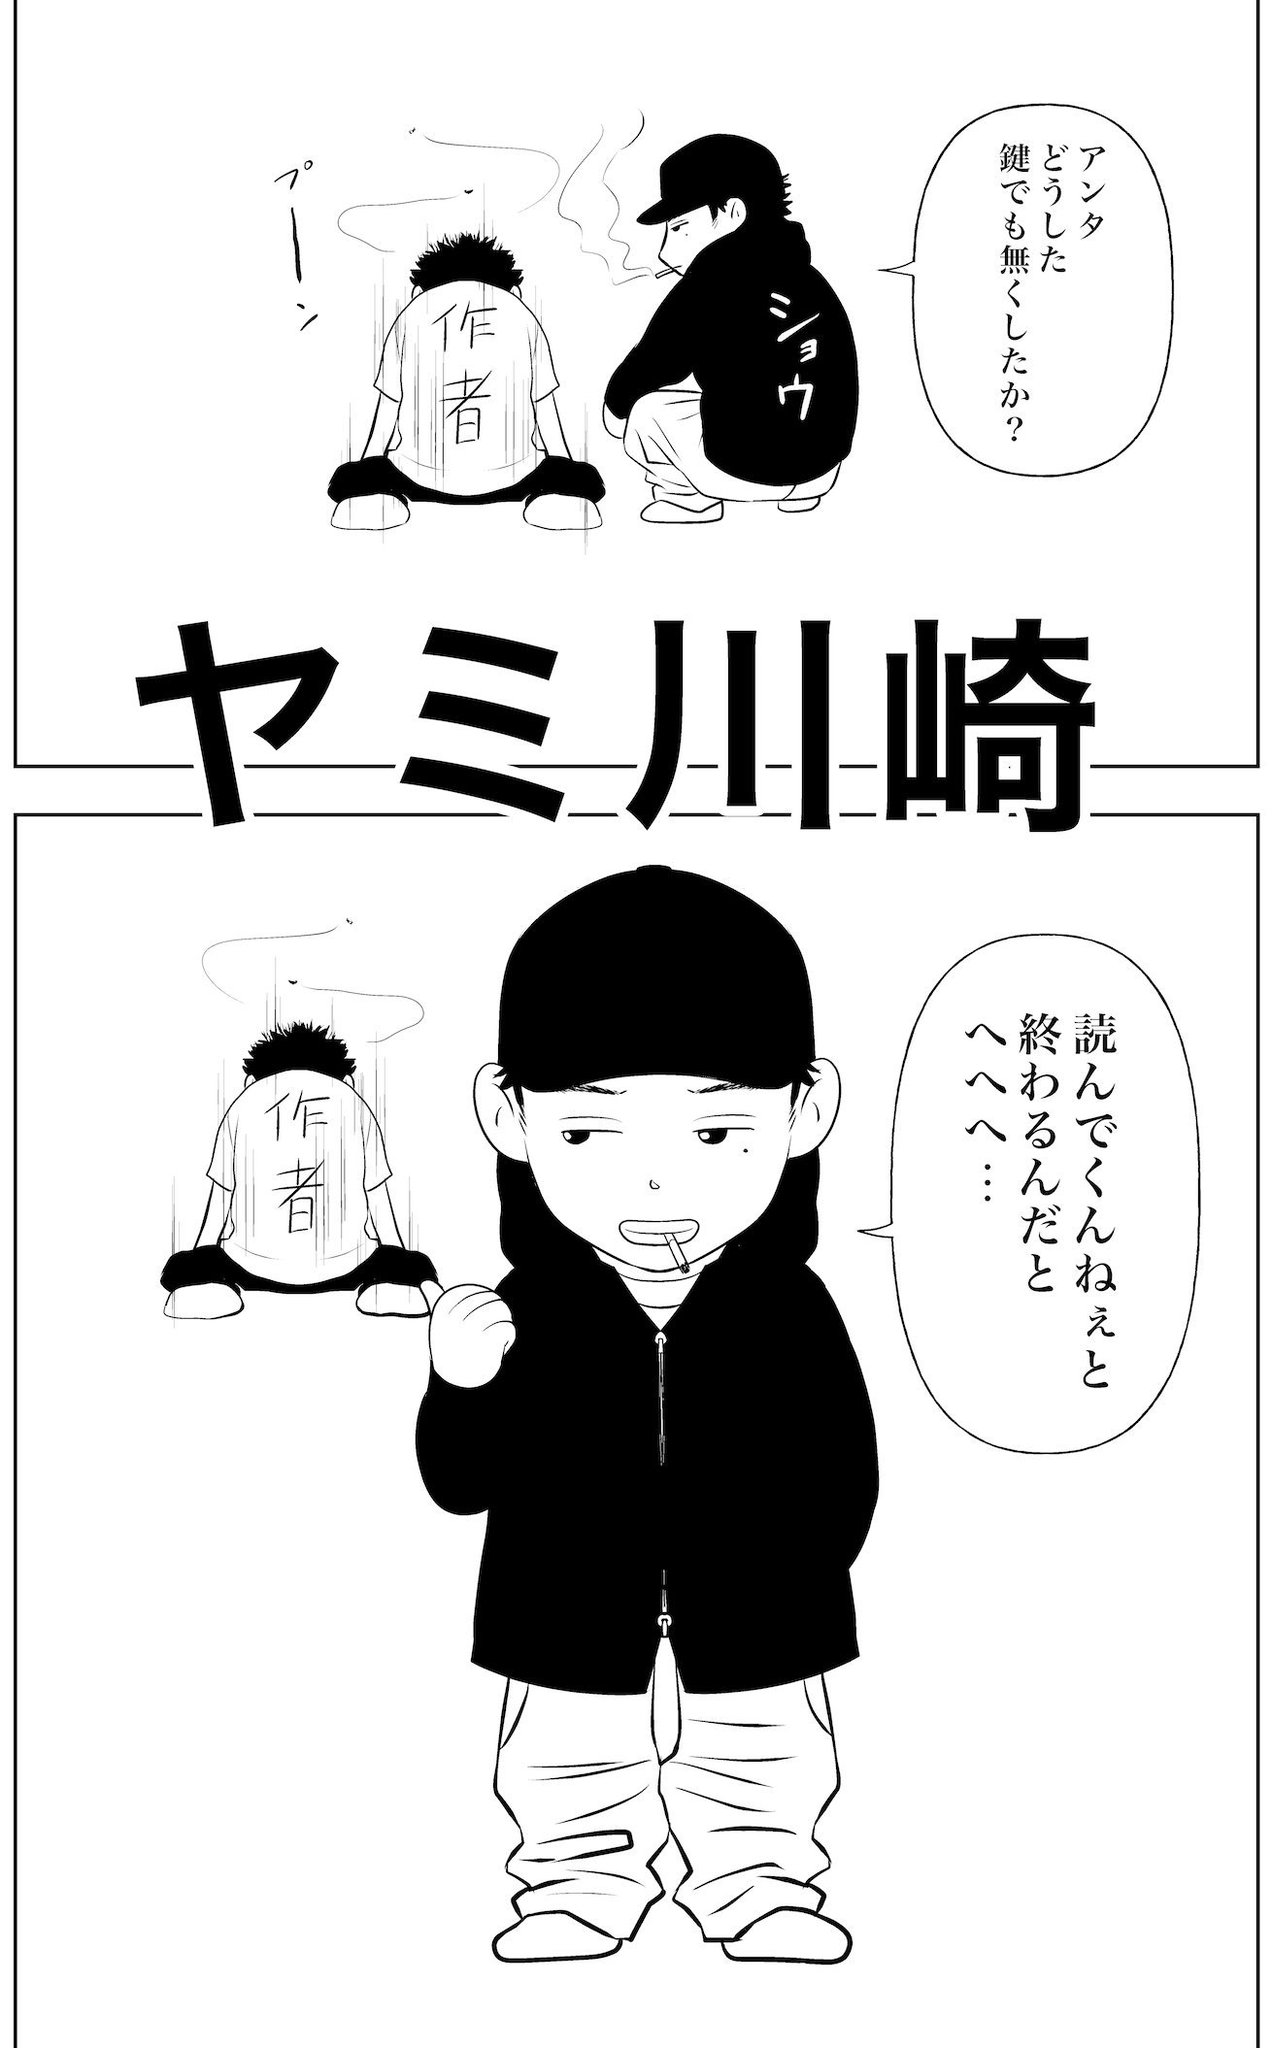 関達也 ヤミ川崎 作者のつぼやき ヒップホップ漫画 ラップ漫画 川崎